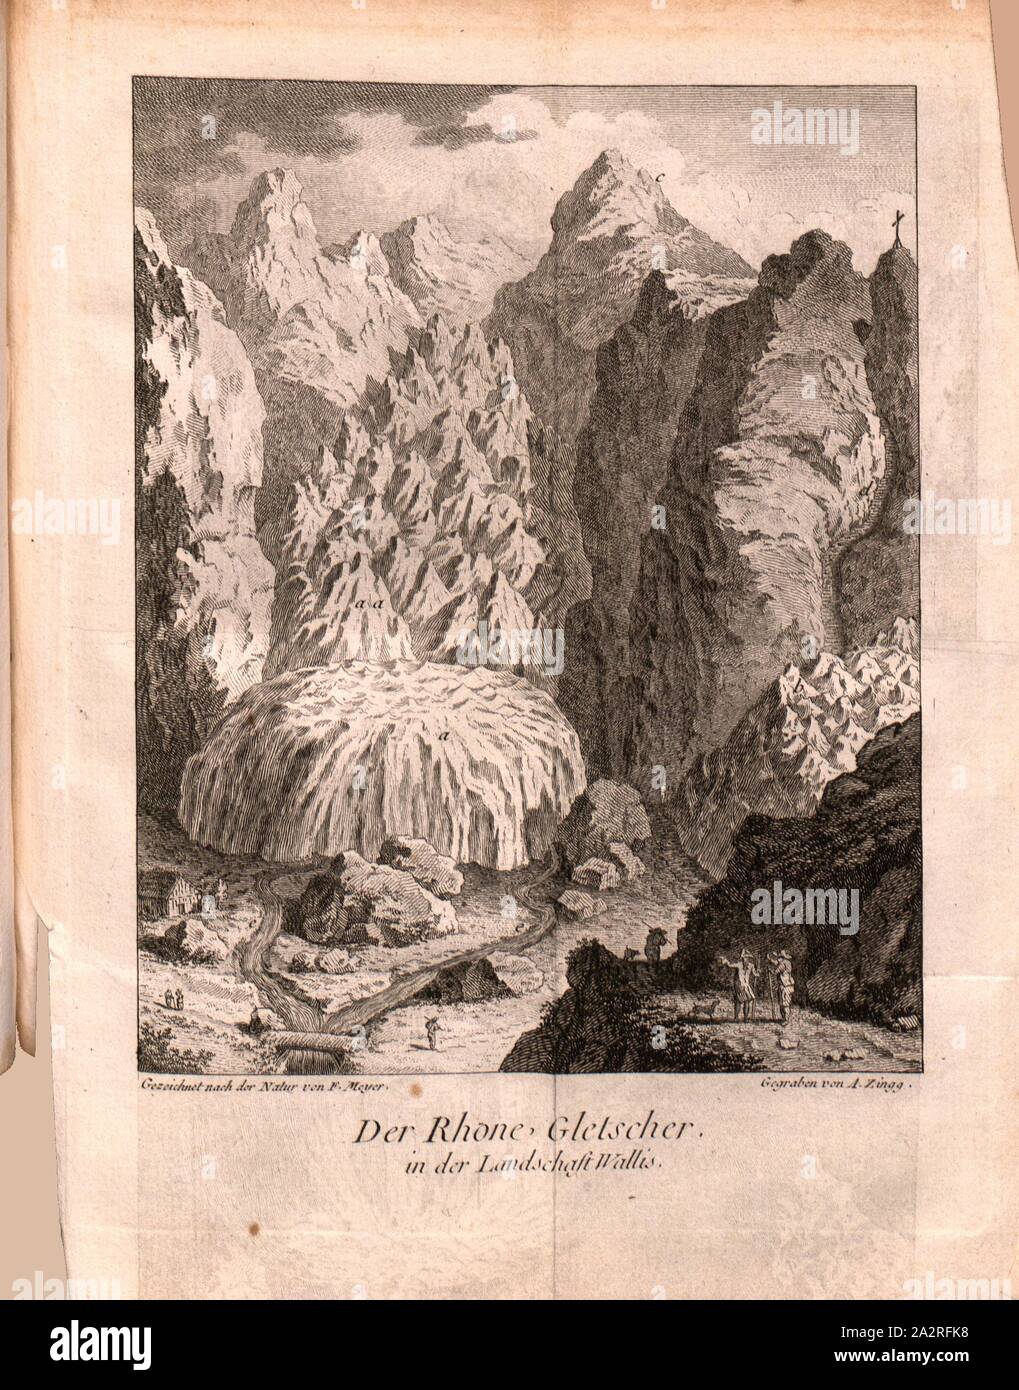 The Rhone Glacier in the Valais countryside, View of the Rhone Glacier, Signed: drawn after the nature of F. Meyer, dug by A. Zingg, pl. 3, after p. 232 (part 1), Meyer, F. (gezeichnet); Zingg, Adrian (gegraben), 1778, Gottlieb Sigmund Gruner, Reisen durch die merkwürdigsten Gegenden Helvetiens (...). Londen [i. e. Bern]: bey der typographischen Gesellschaft, 1778 Stock Photo